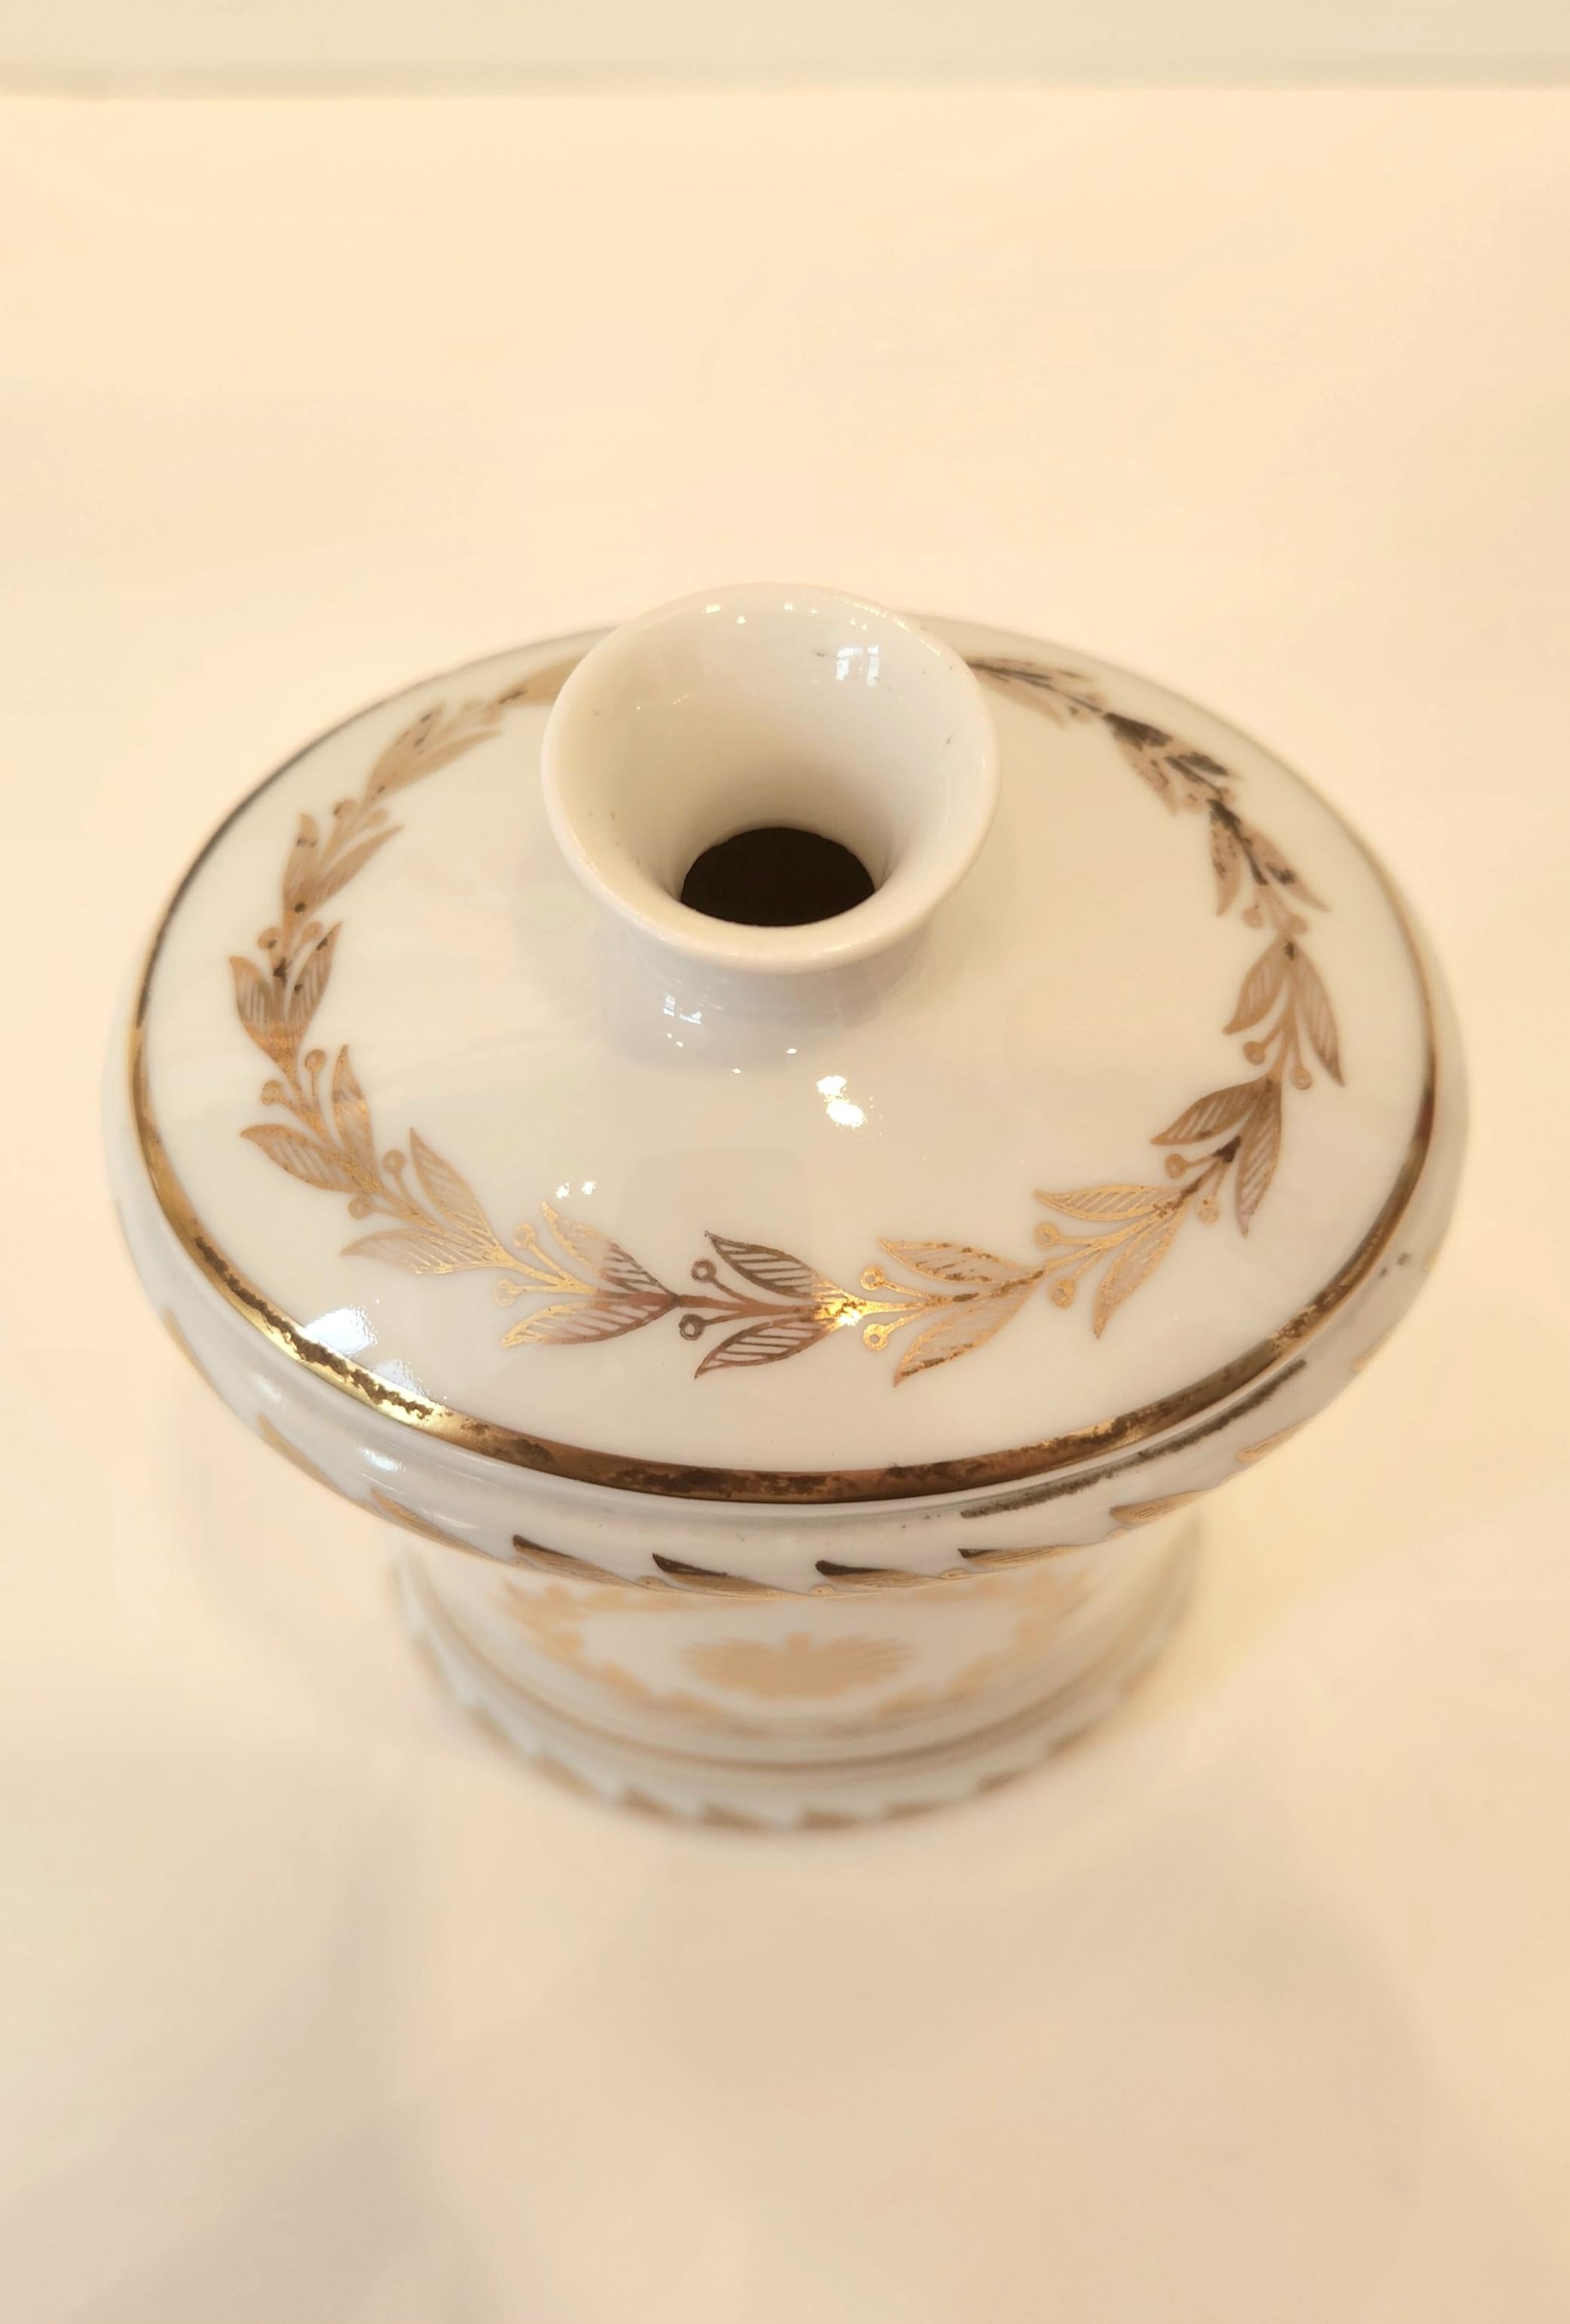 Diese schöne Vase aus Sèvres ist aus Porzellan mit Golddekor und für eine einzelne Blume bestimmt. Diese handbemalte Porzellanvase eignet sich sowohl als eigenständige Dekoration als auch als Träger für Blumen oder Grünzeug. Der Stil des Designs ist